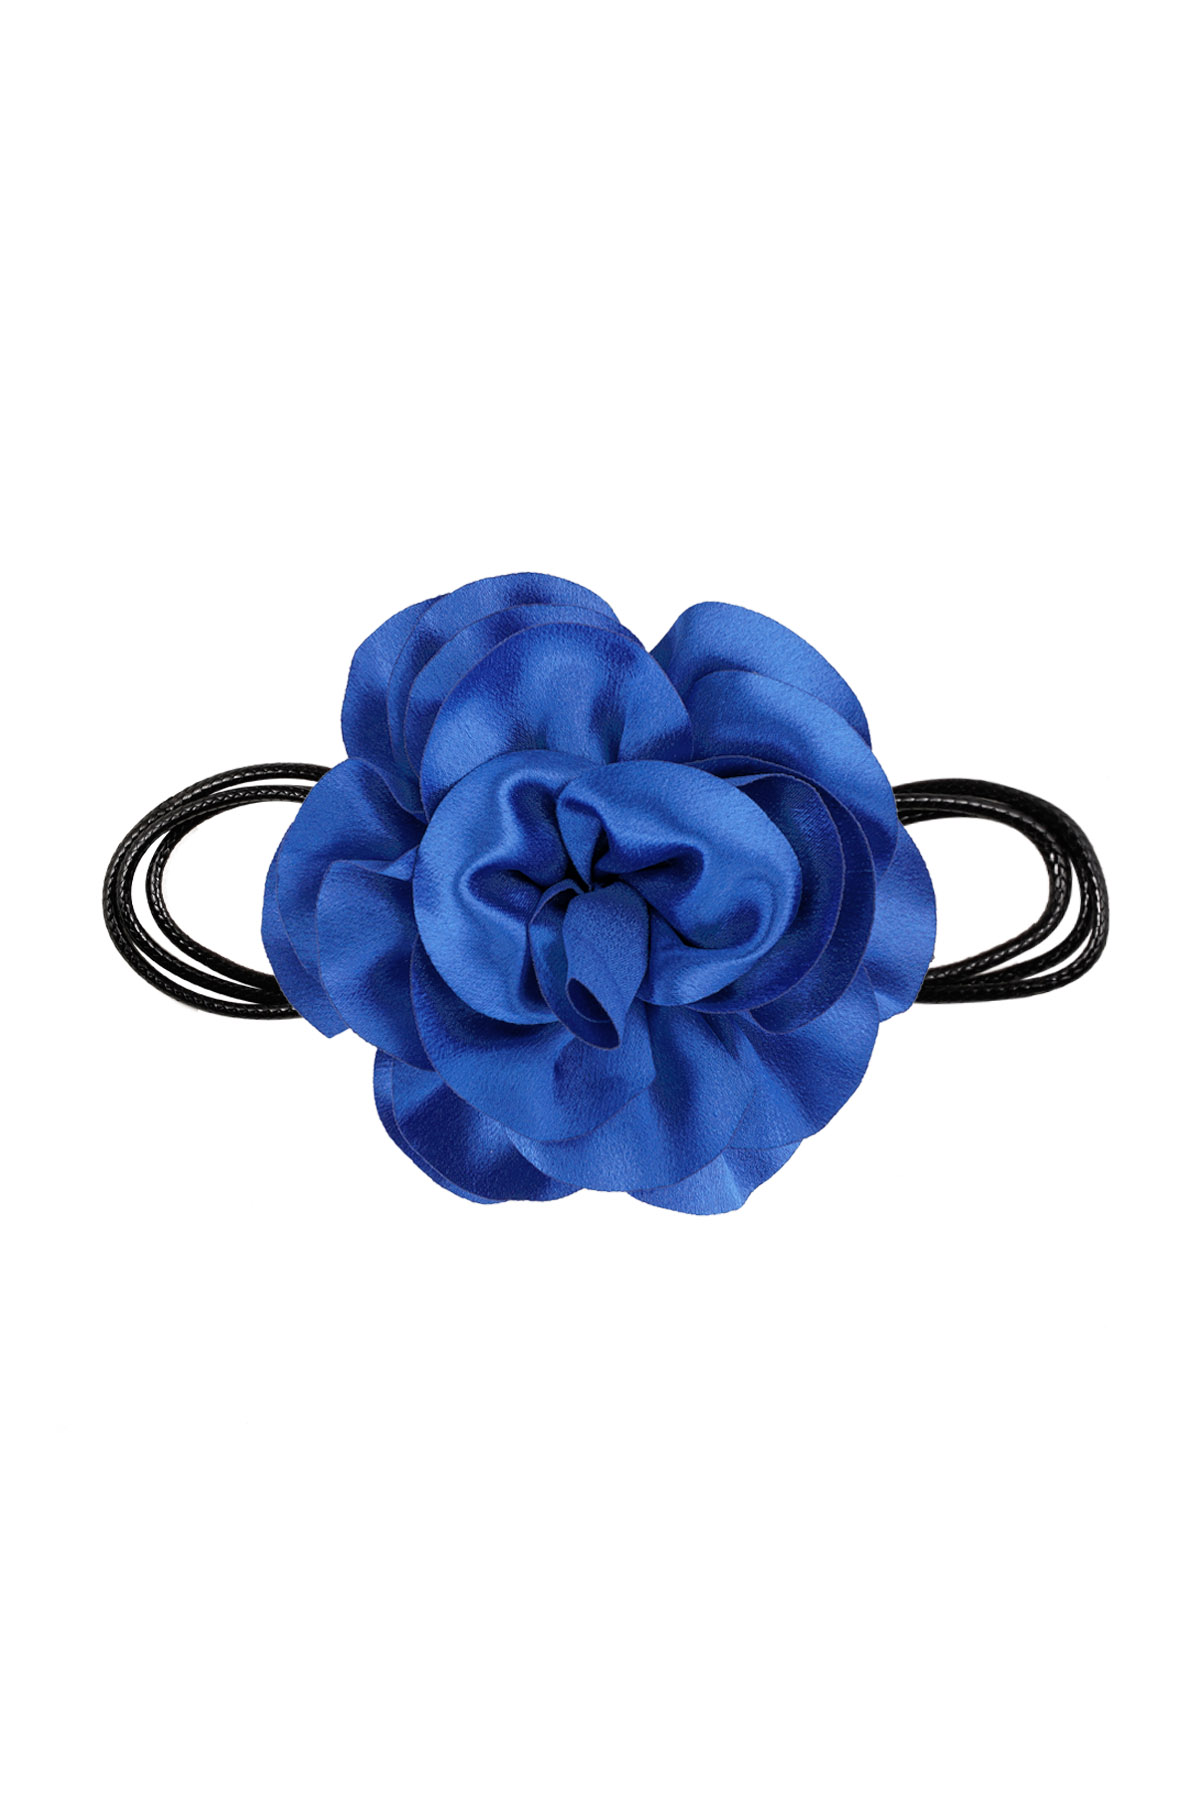 Collana corda fiore lucido - blu brillante h5 